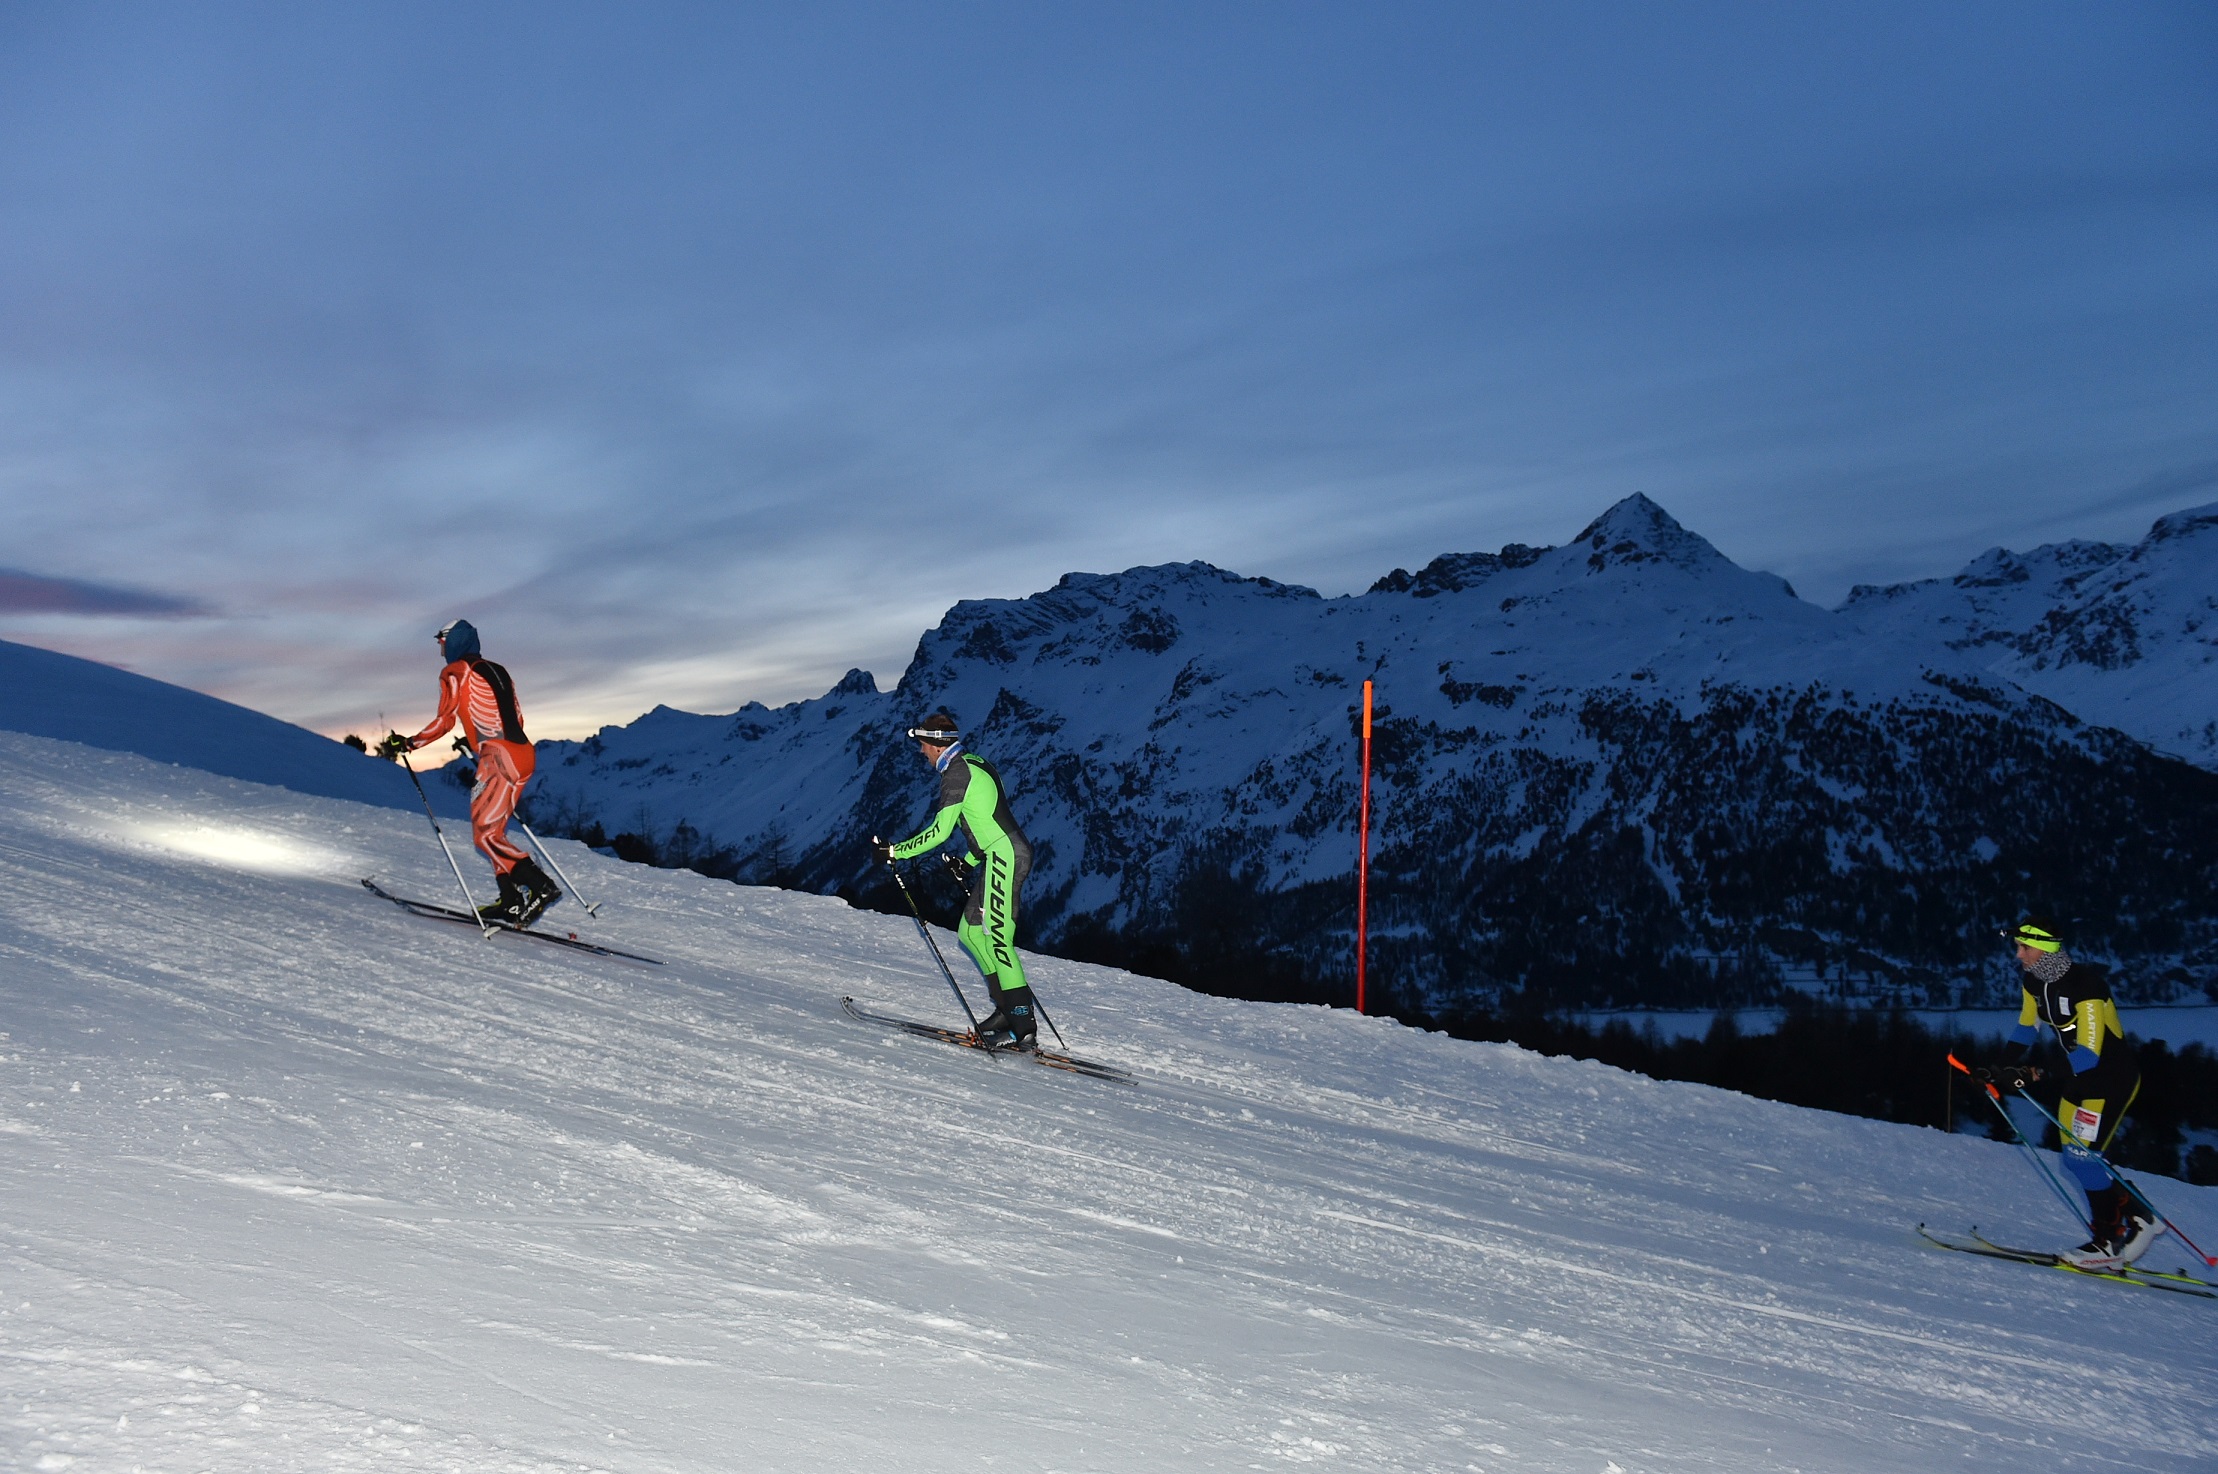 3-Summits Corvatsch - 2019
Skitourenwettkampf mit Höhenunterschied: 837 hm, Distanz: 4 km
https://www.3-summits.ch